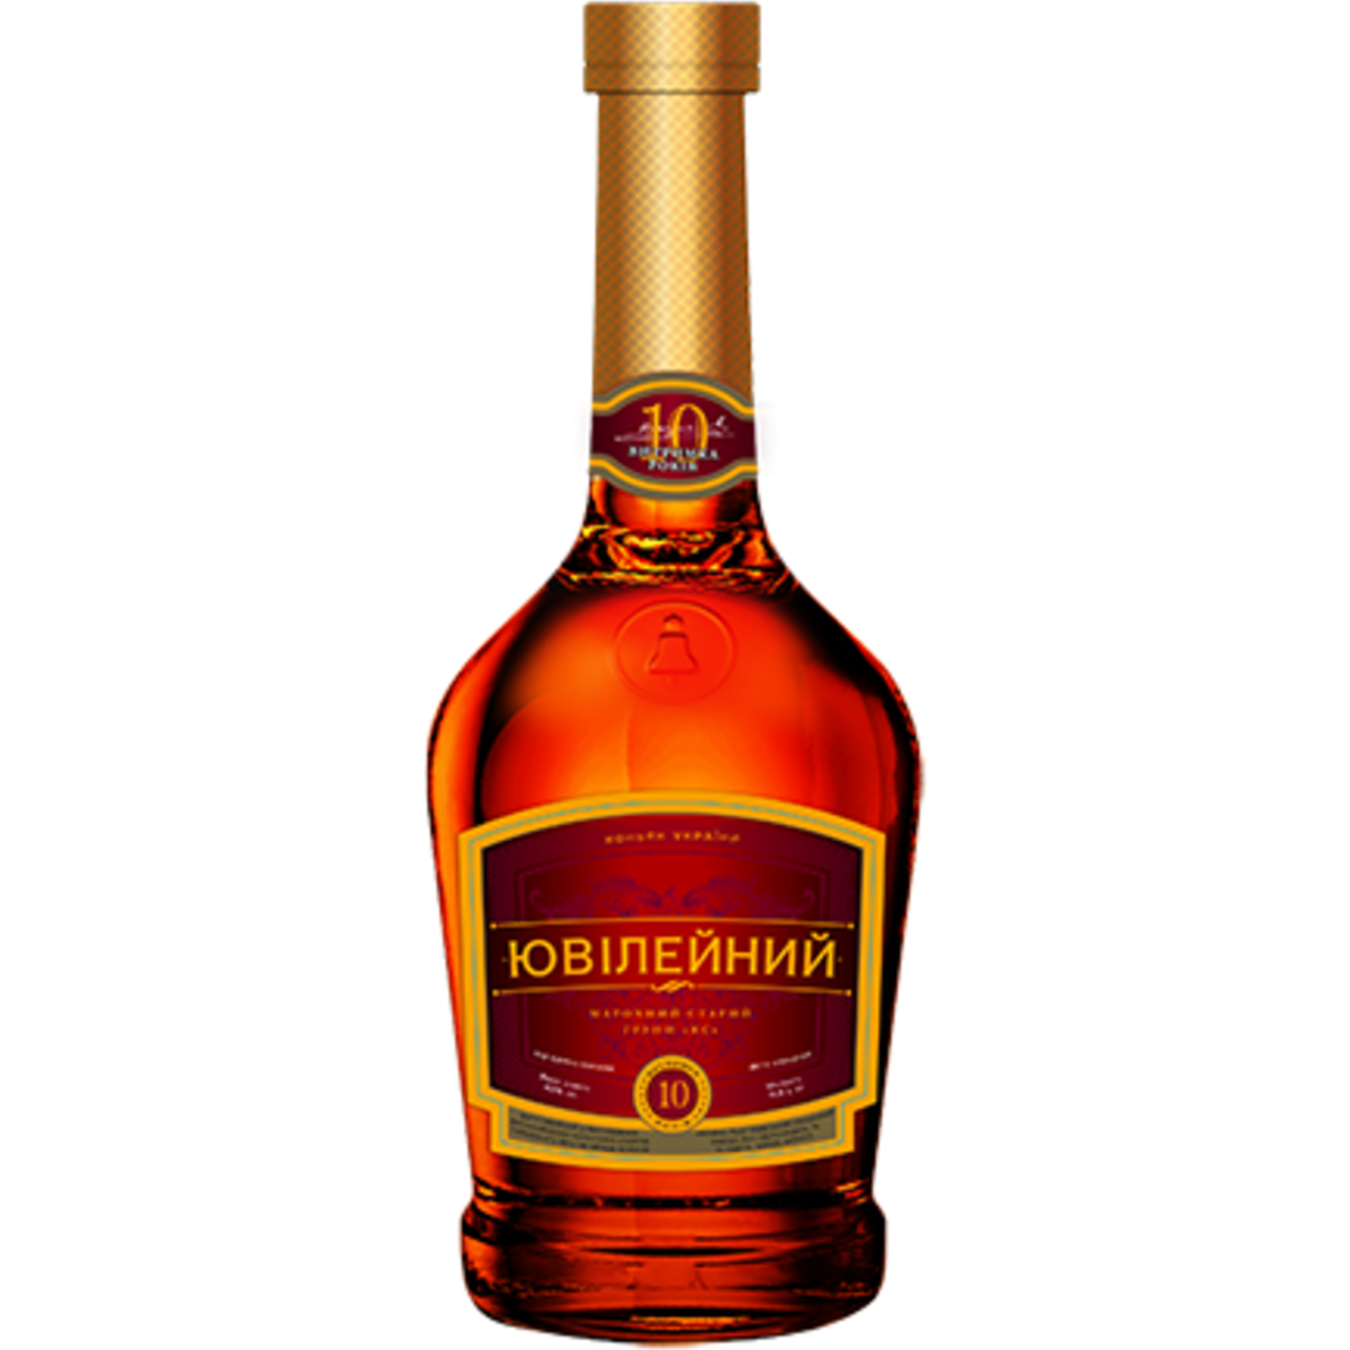 Odessa Jubilee cognac 43% shaped bottle 0.5 l 2